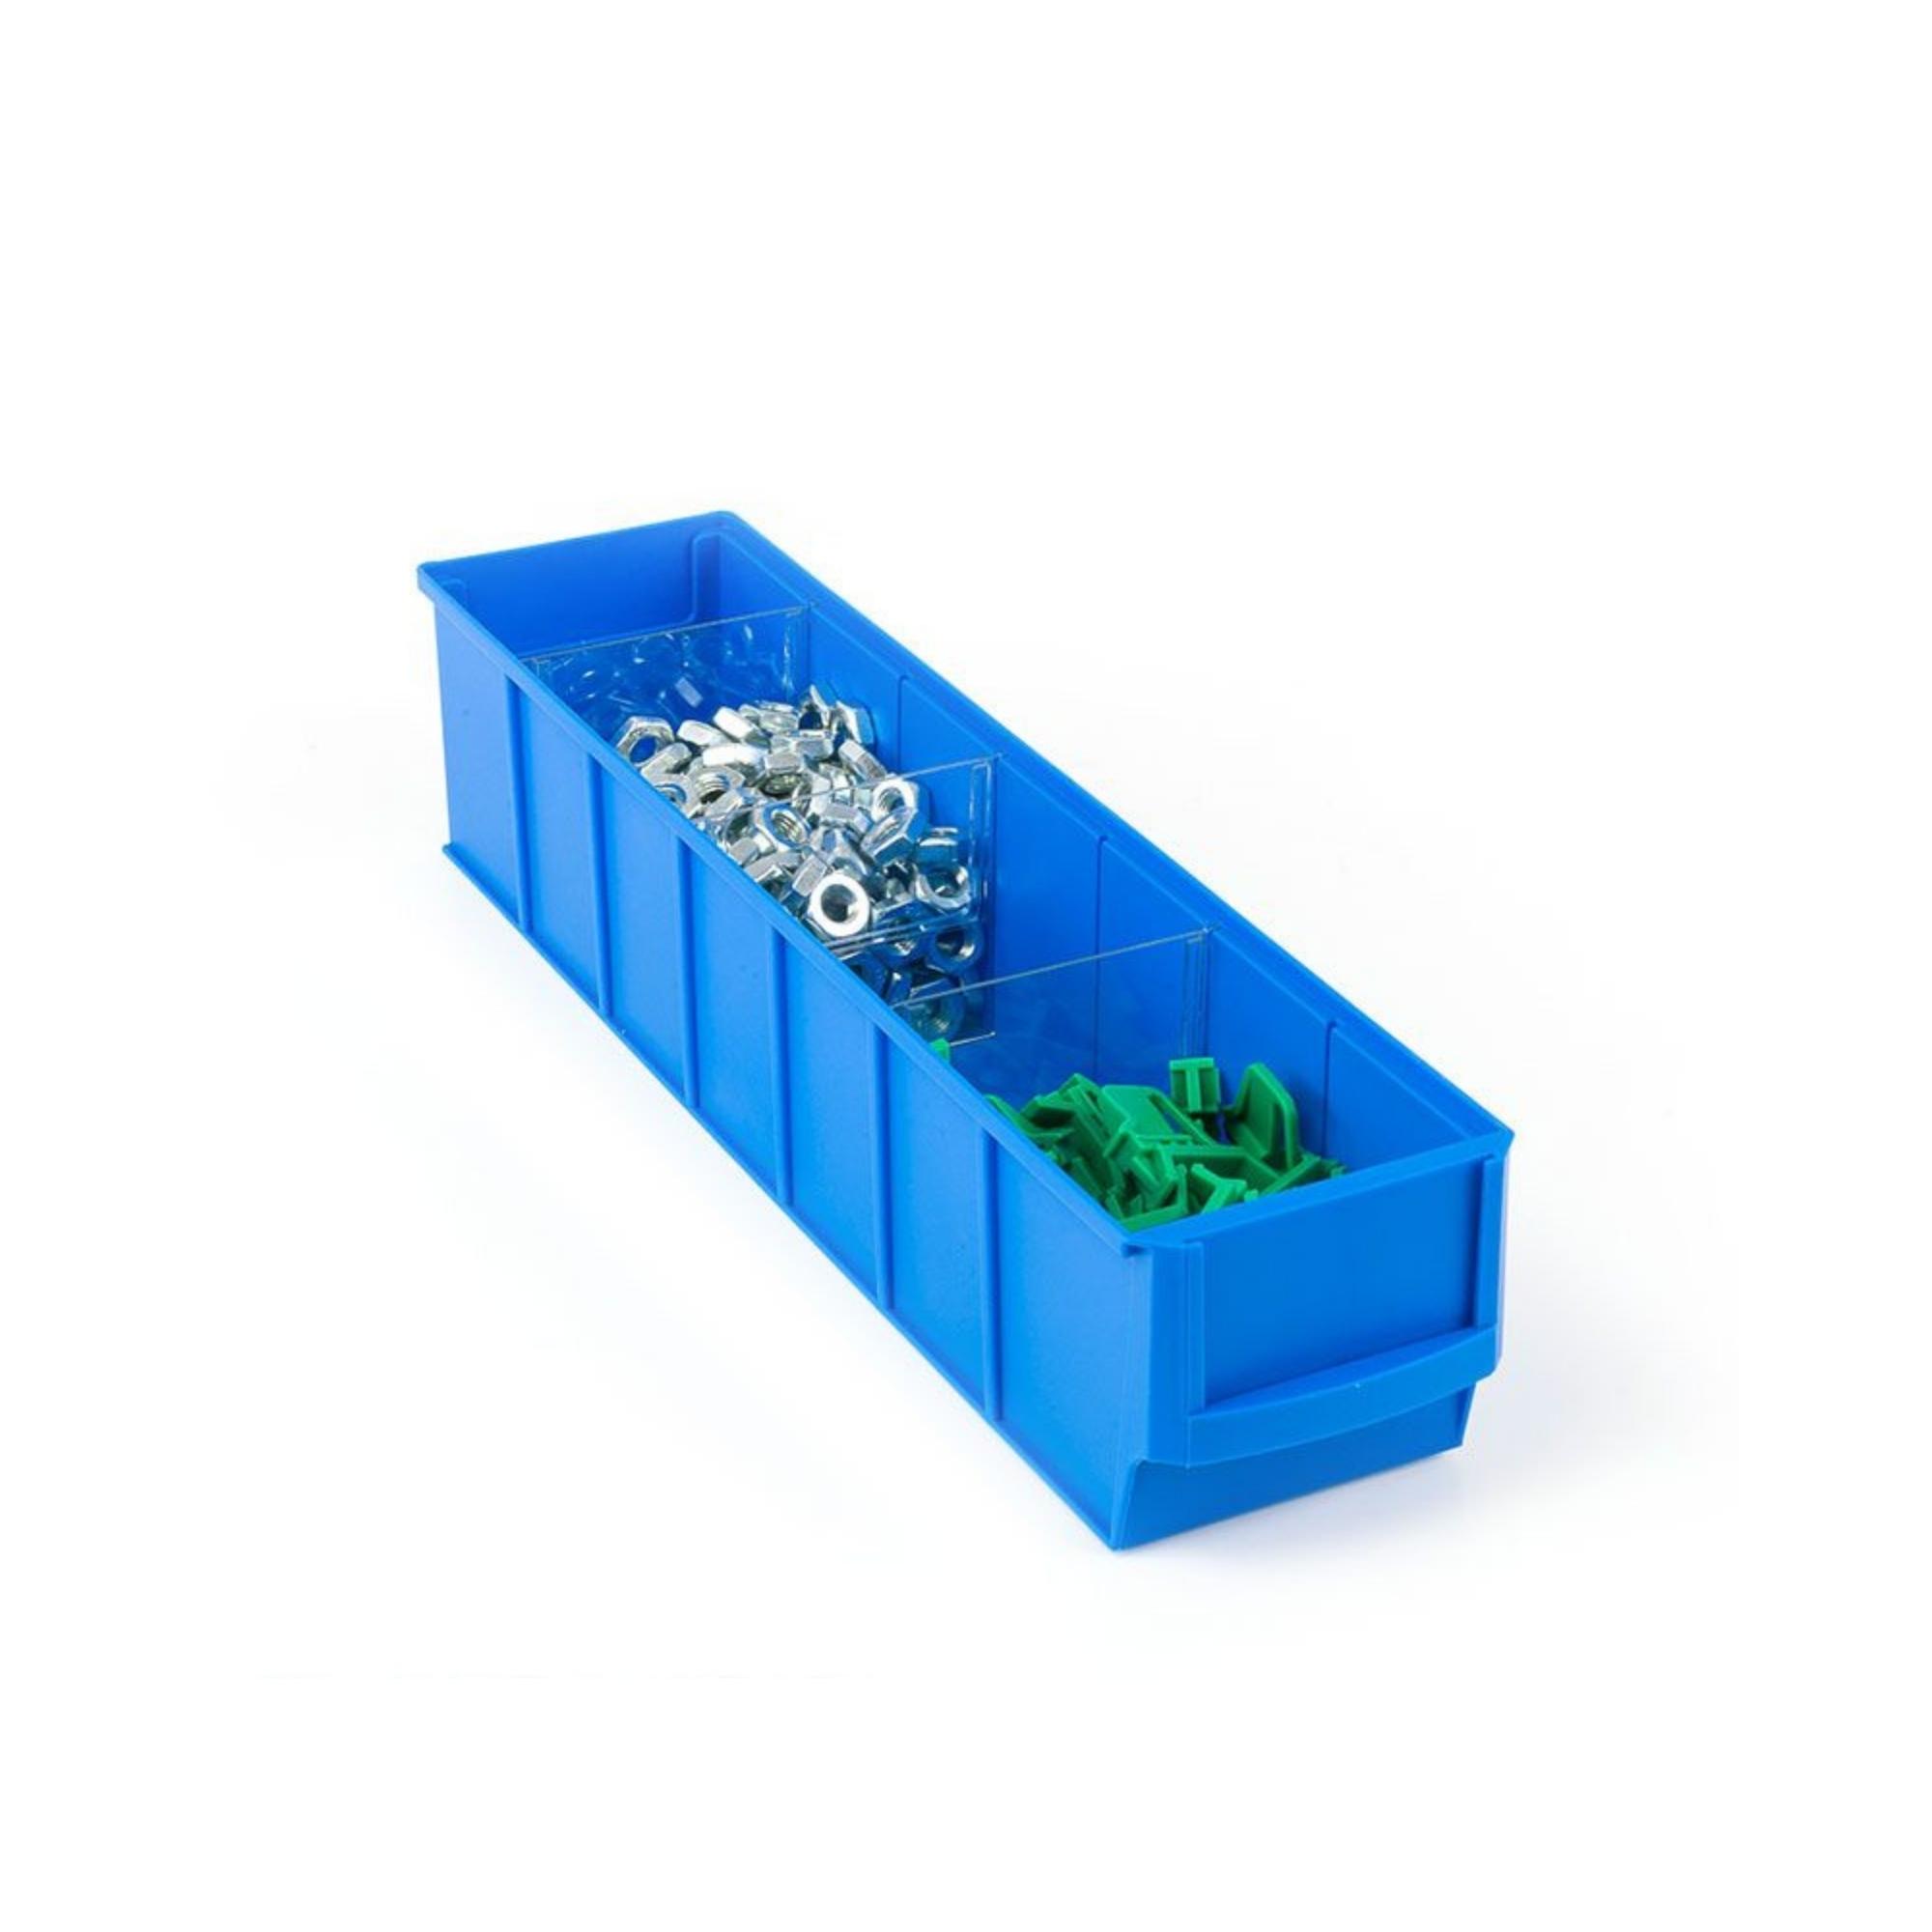 SuperSparSet 48x Blaue Industriebox 300 S | HxBxT 8,1x9,1x30cm | 1,6 Liter | Sichtlagerkasten, Sortimentskasten, Sortimentsbox, Kleinteilebox